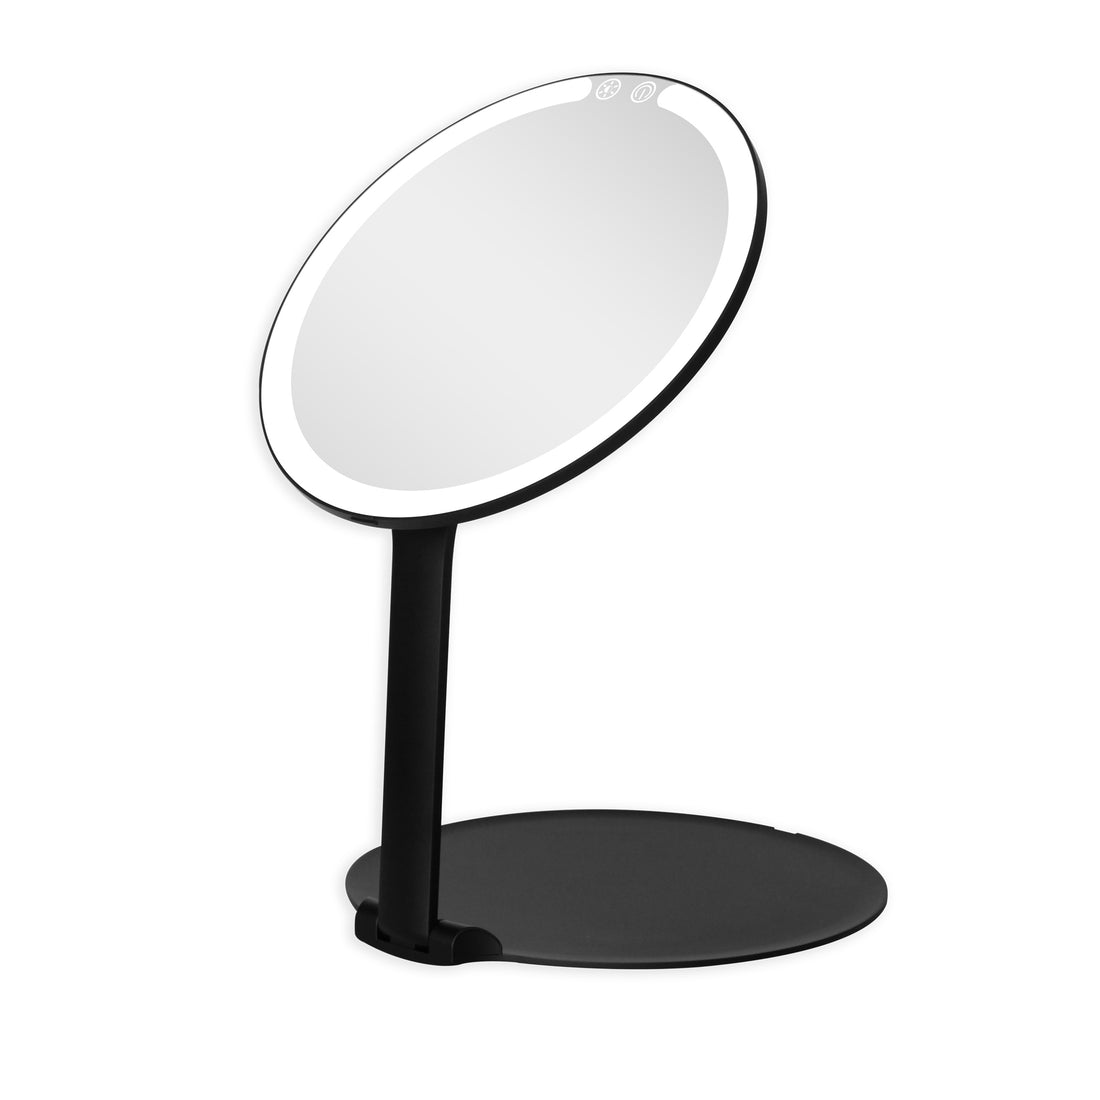 Ayla Slim Tri-Tone LED Makeup Mirror